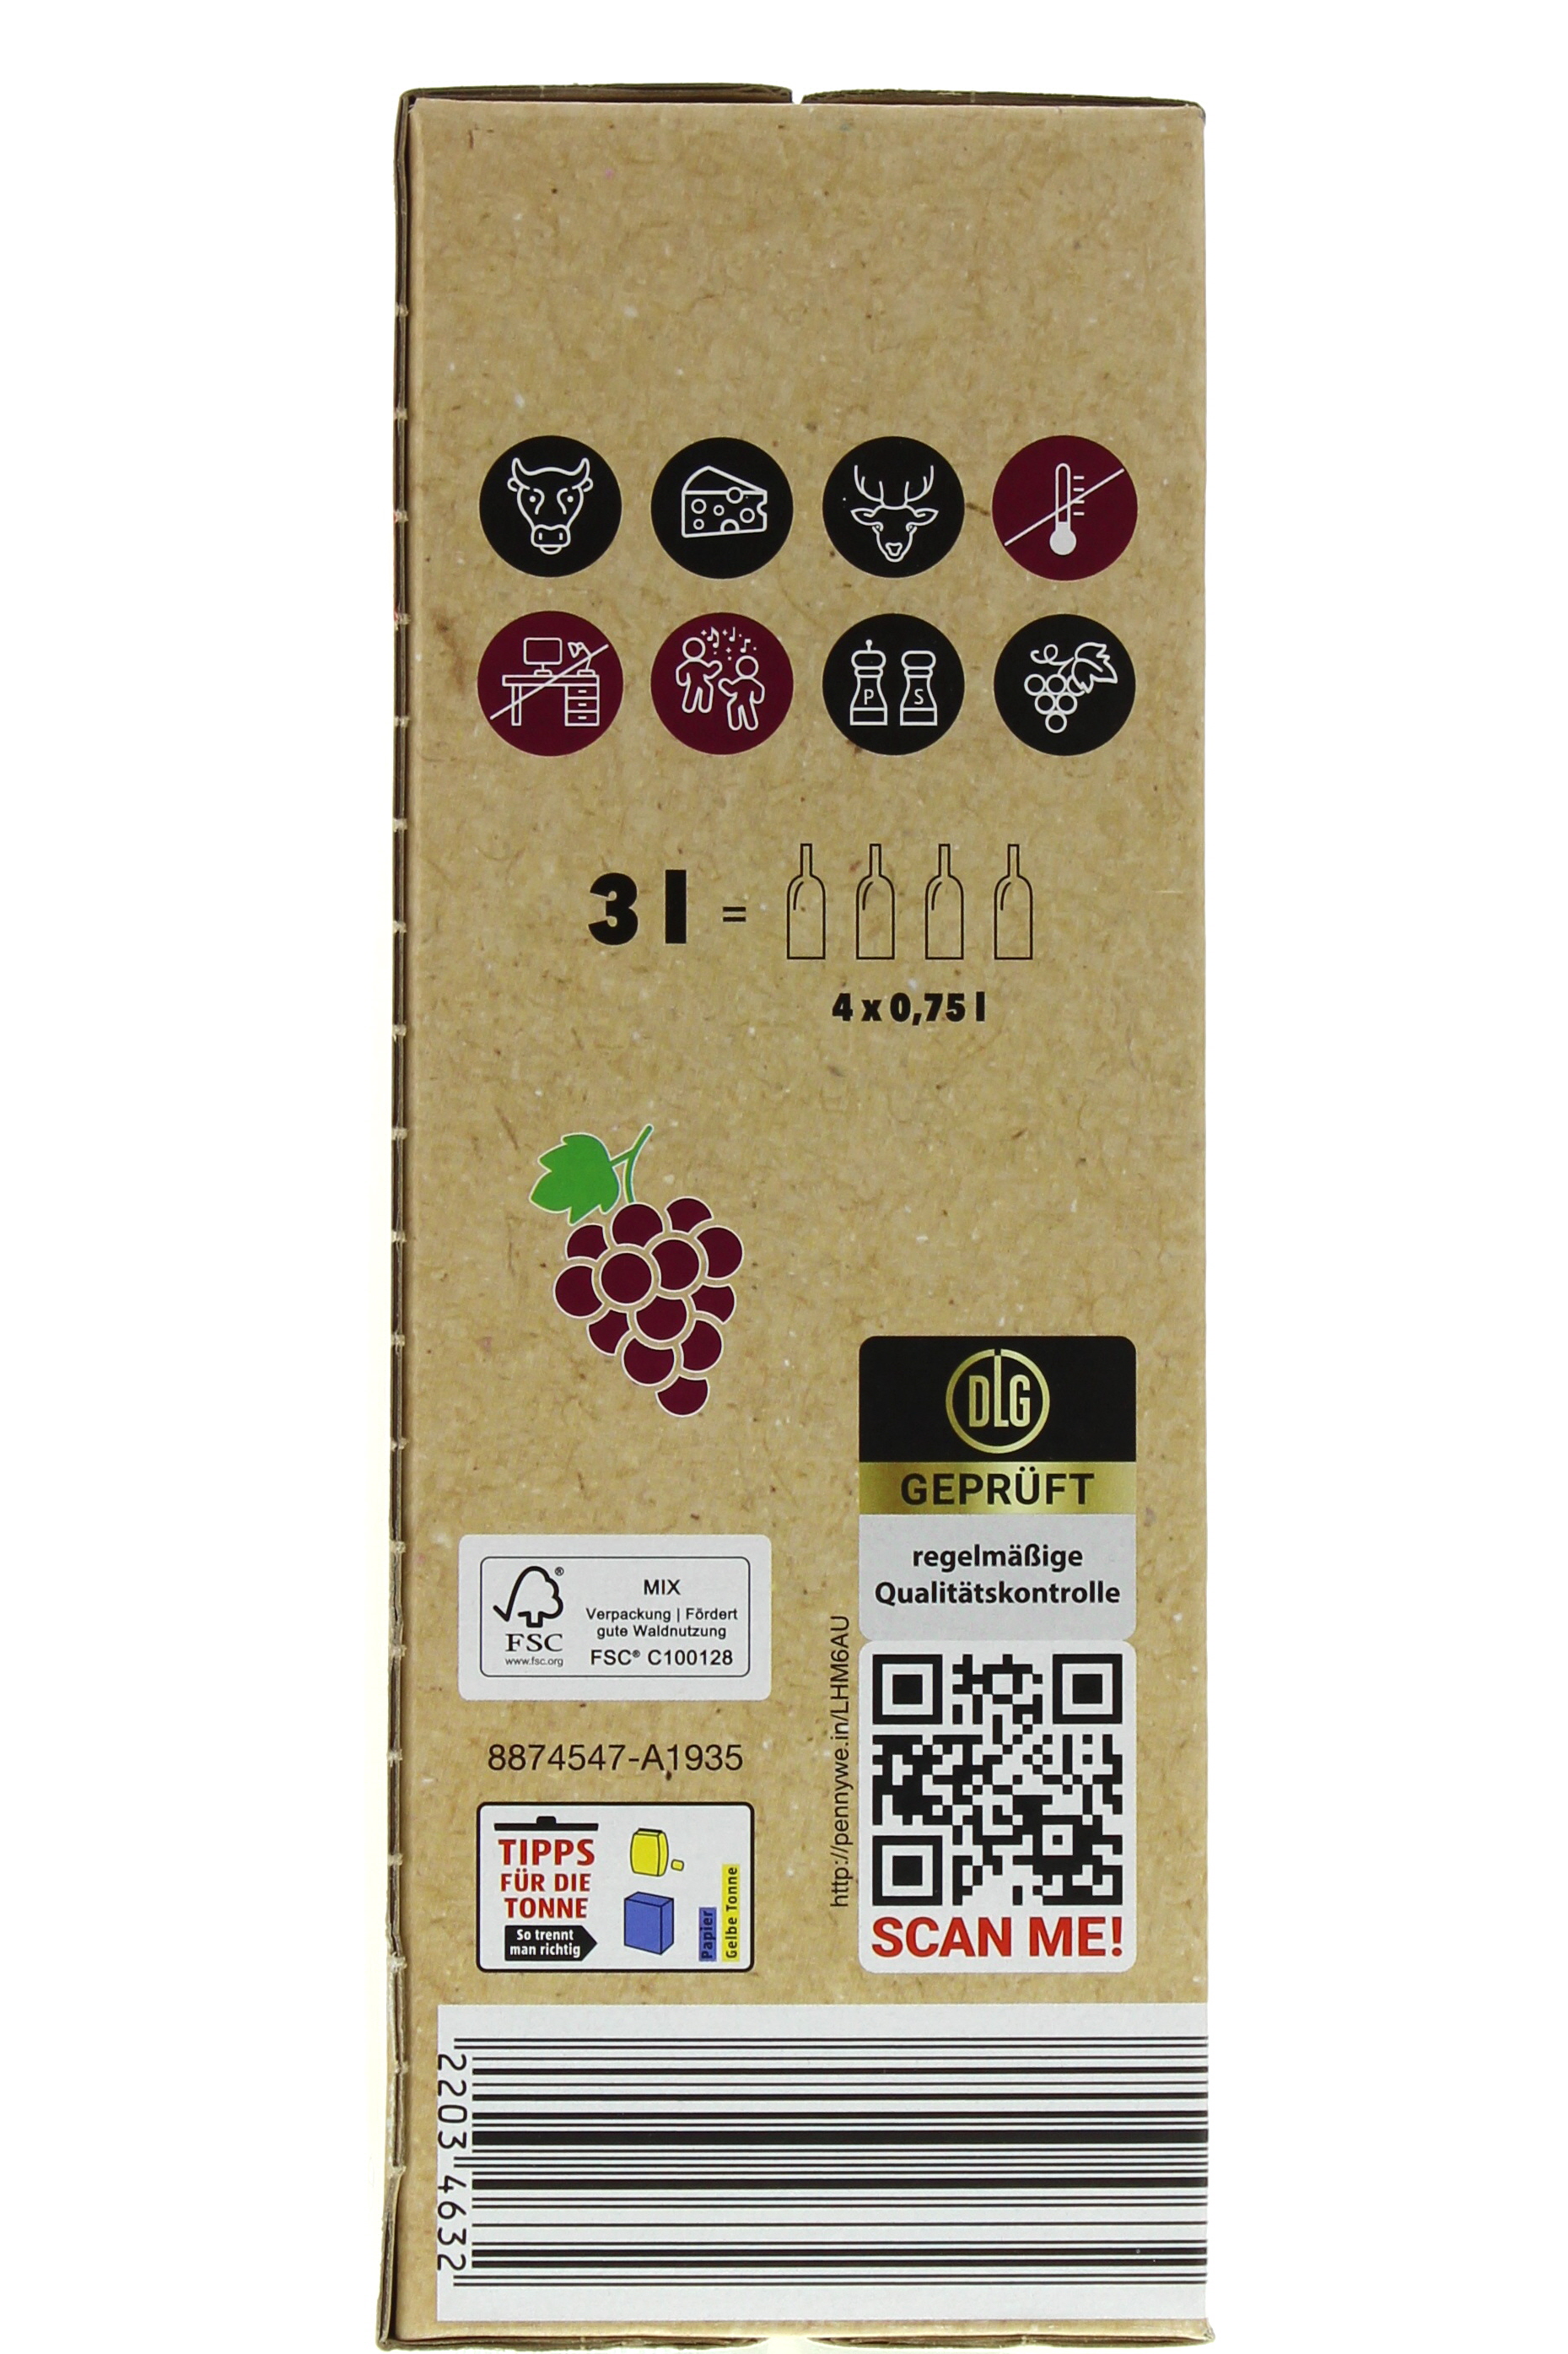 2022 Spanien Tempranillo Syrah Vino 3,0 España Mobile trocken Wein-App PENNY l Bag-in-Box de 